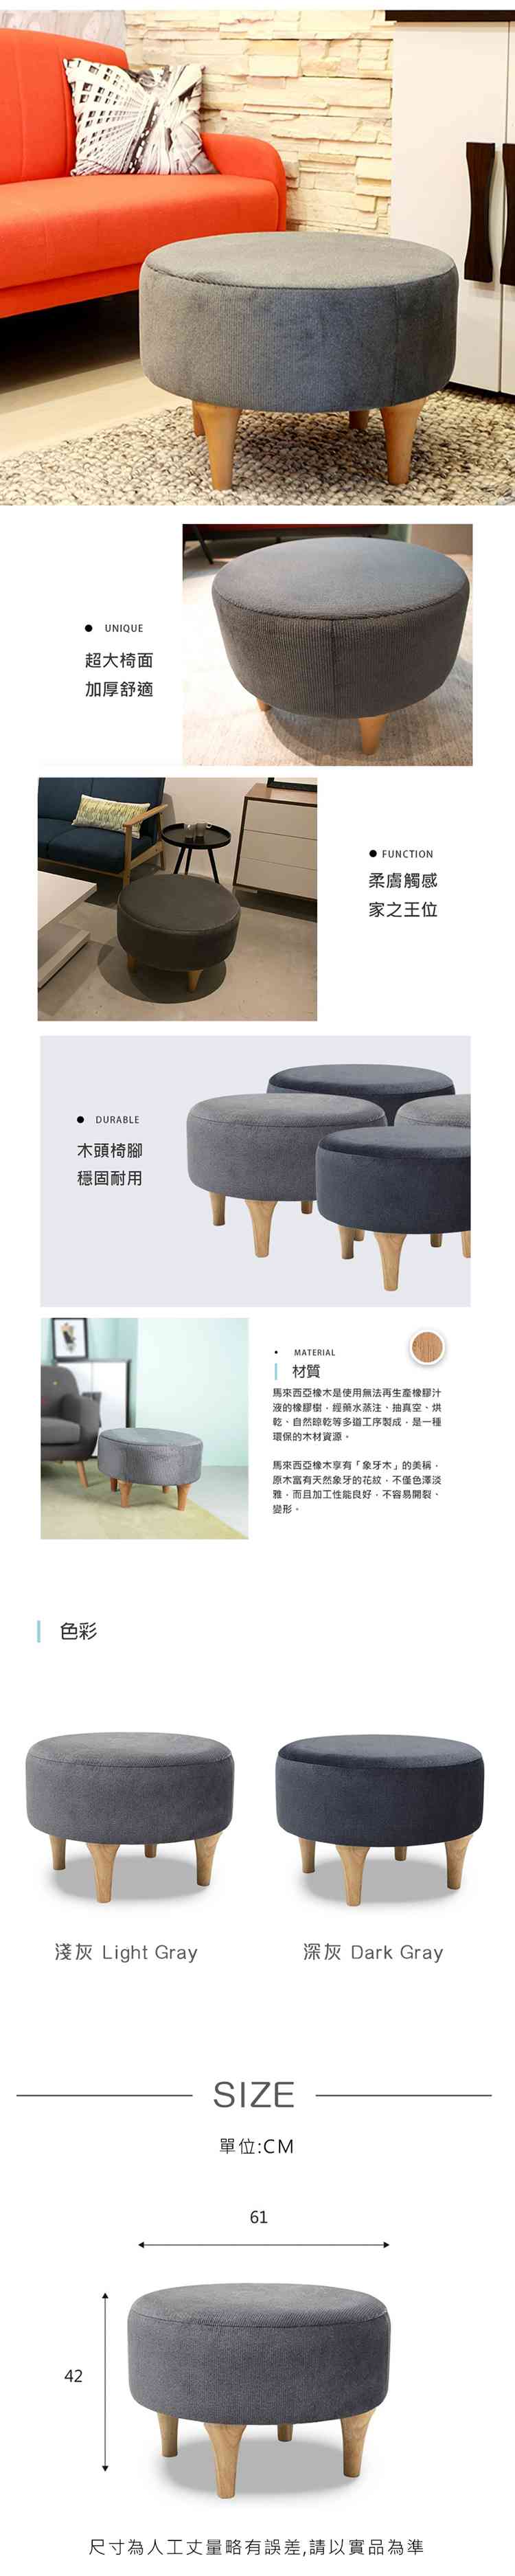 矮凳 腳凳 沙發椅 Bowen 圓型舒適大矮凳(LS/CAA-001)【obis】時尚家居